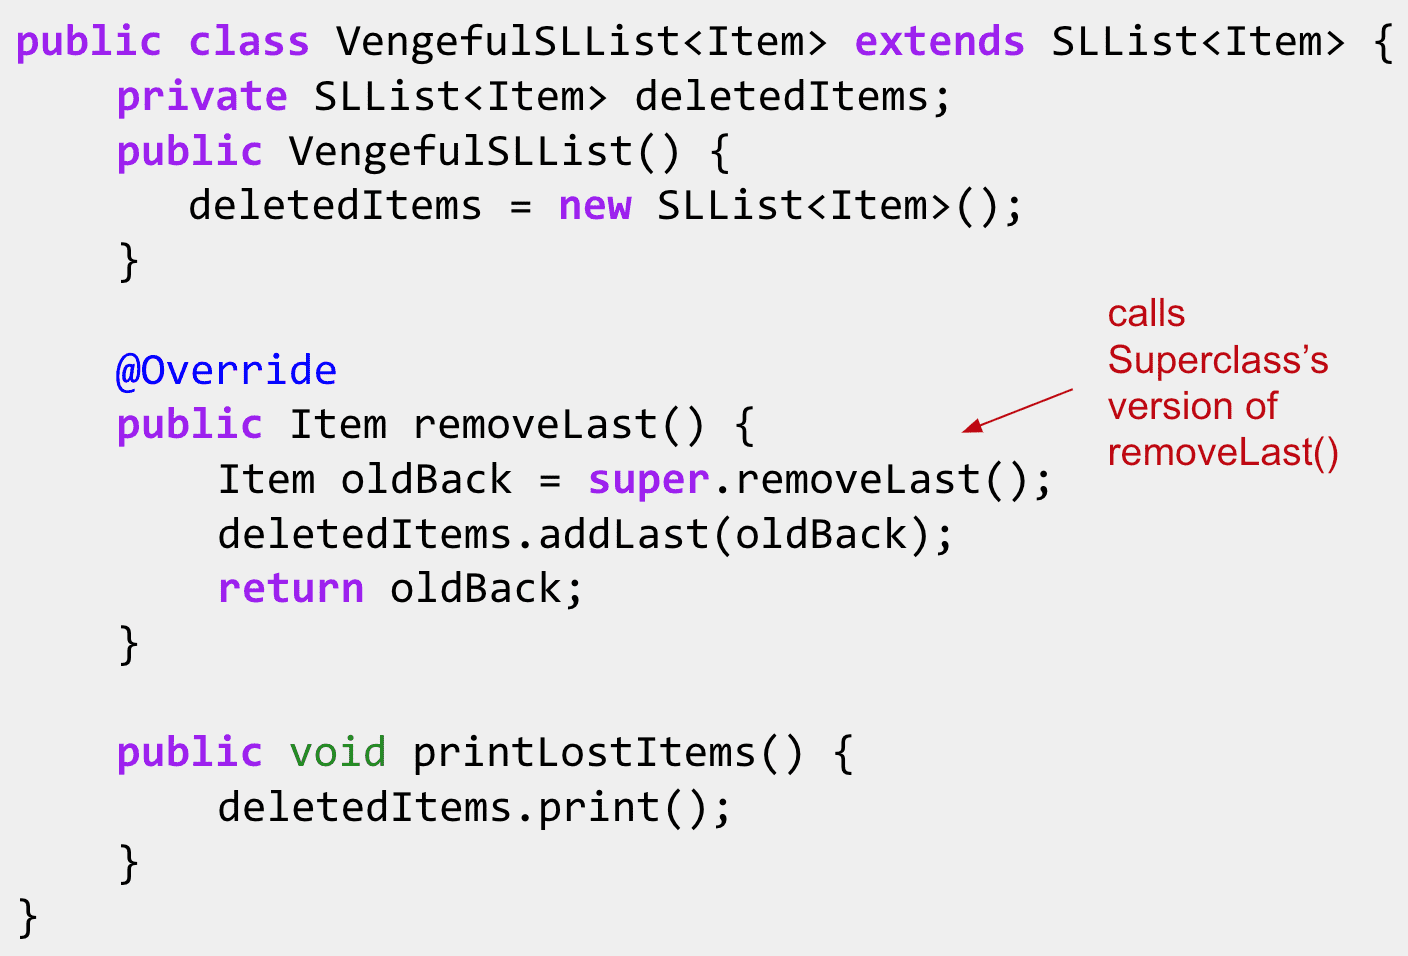 这样就不用在removeLast()里重复父类的代码了
Ps:这里想做的是在SLList的基础上实现一个可以记住删除了的元素的SSList